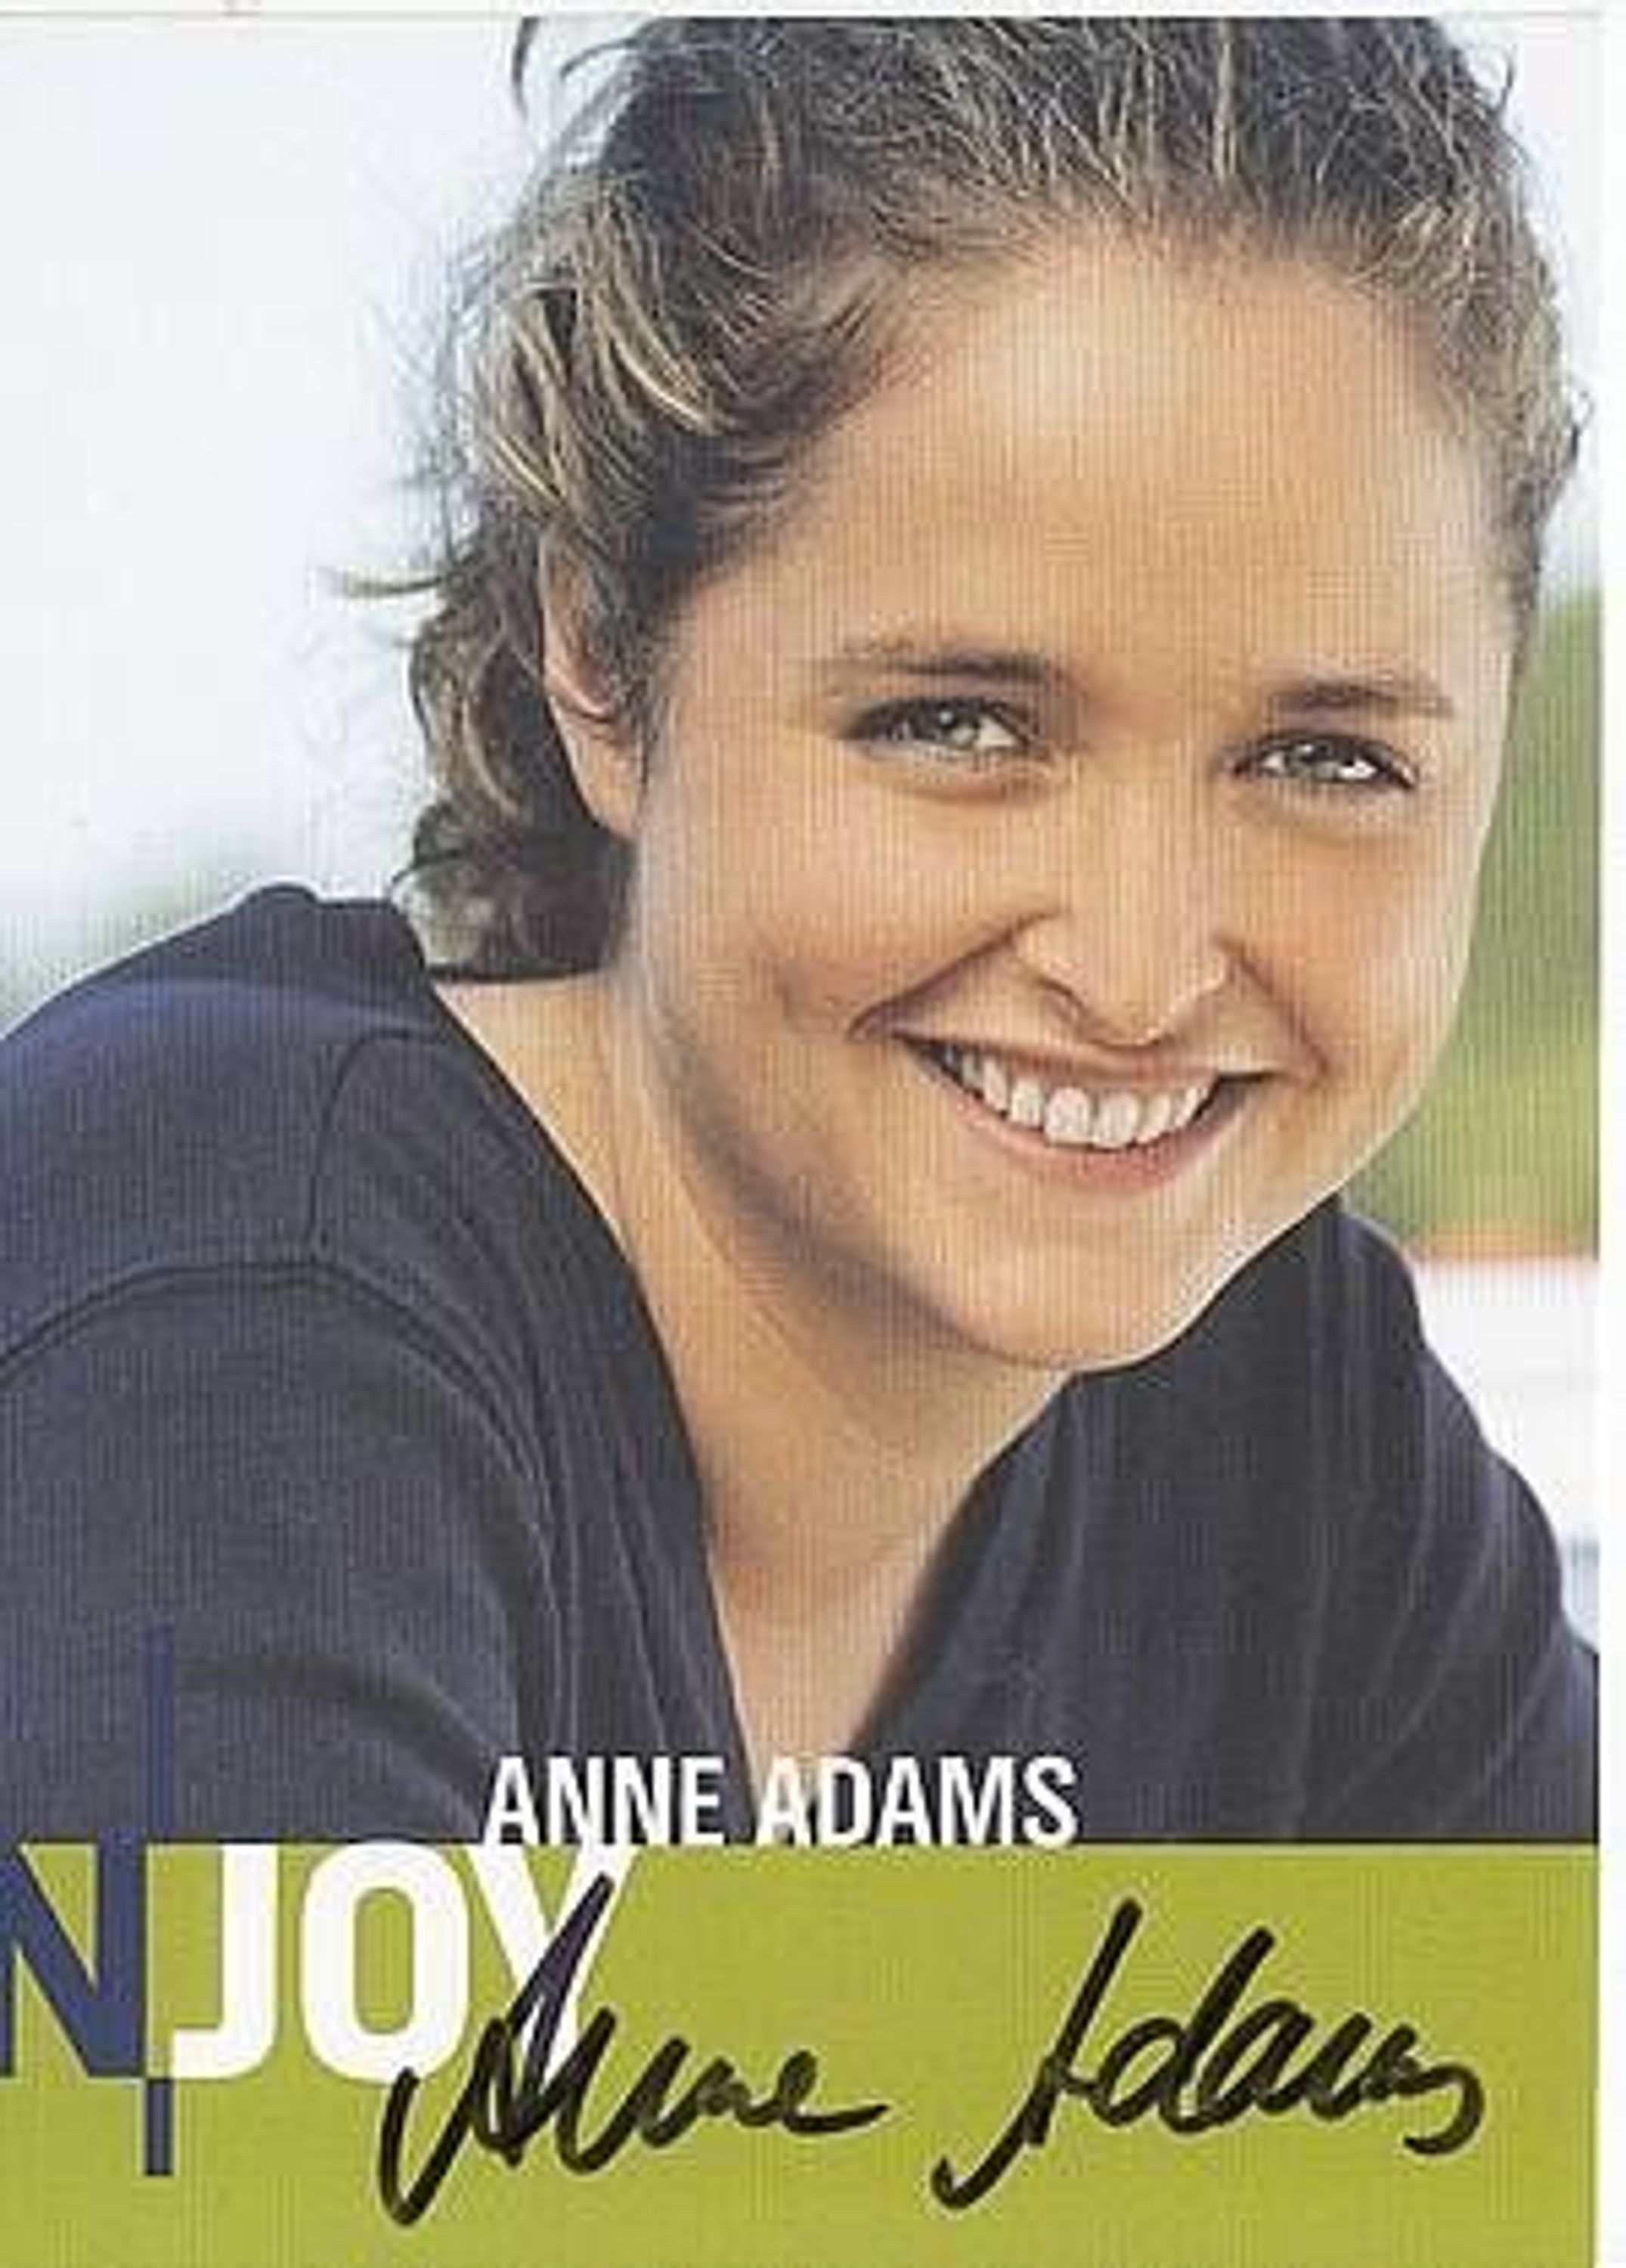 Anne Adams Autogrammkarte Original Signiert bek. aus N Joy + 59681 gebraucht ...